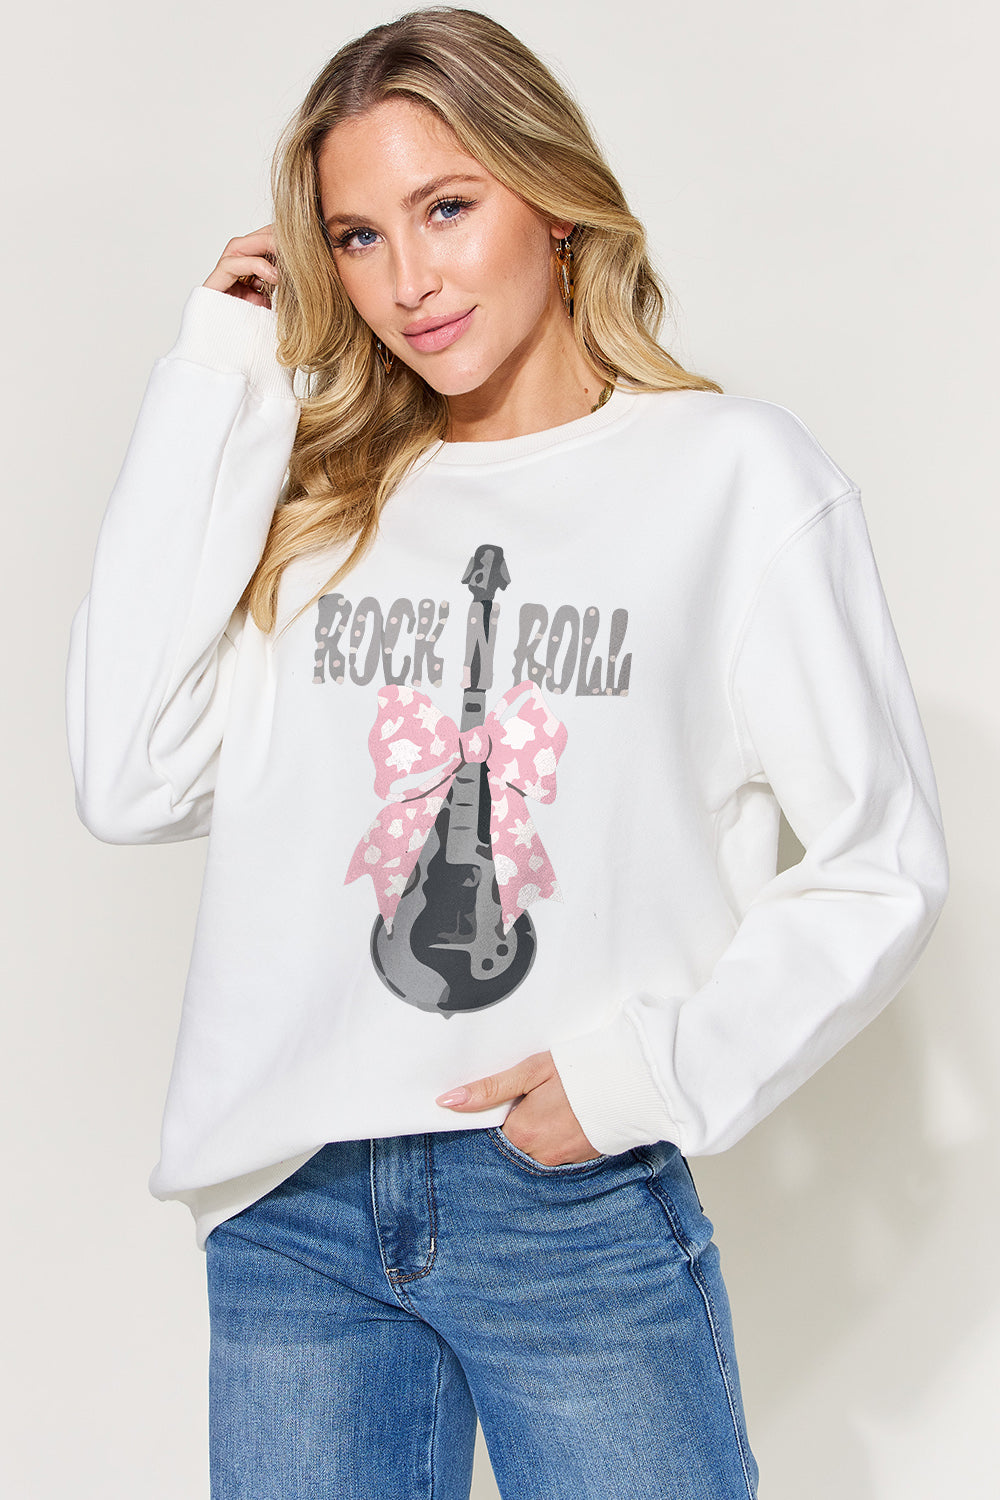 Rock n' Roll Sweatshirt